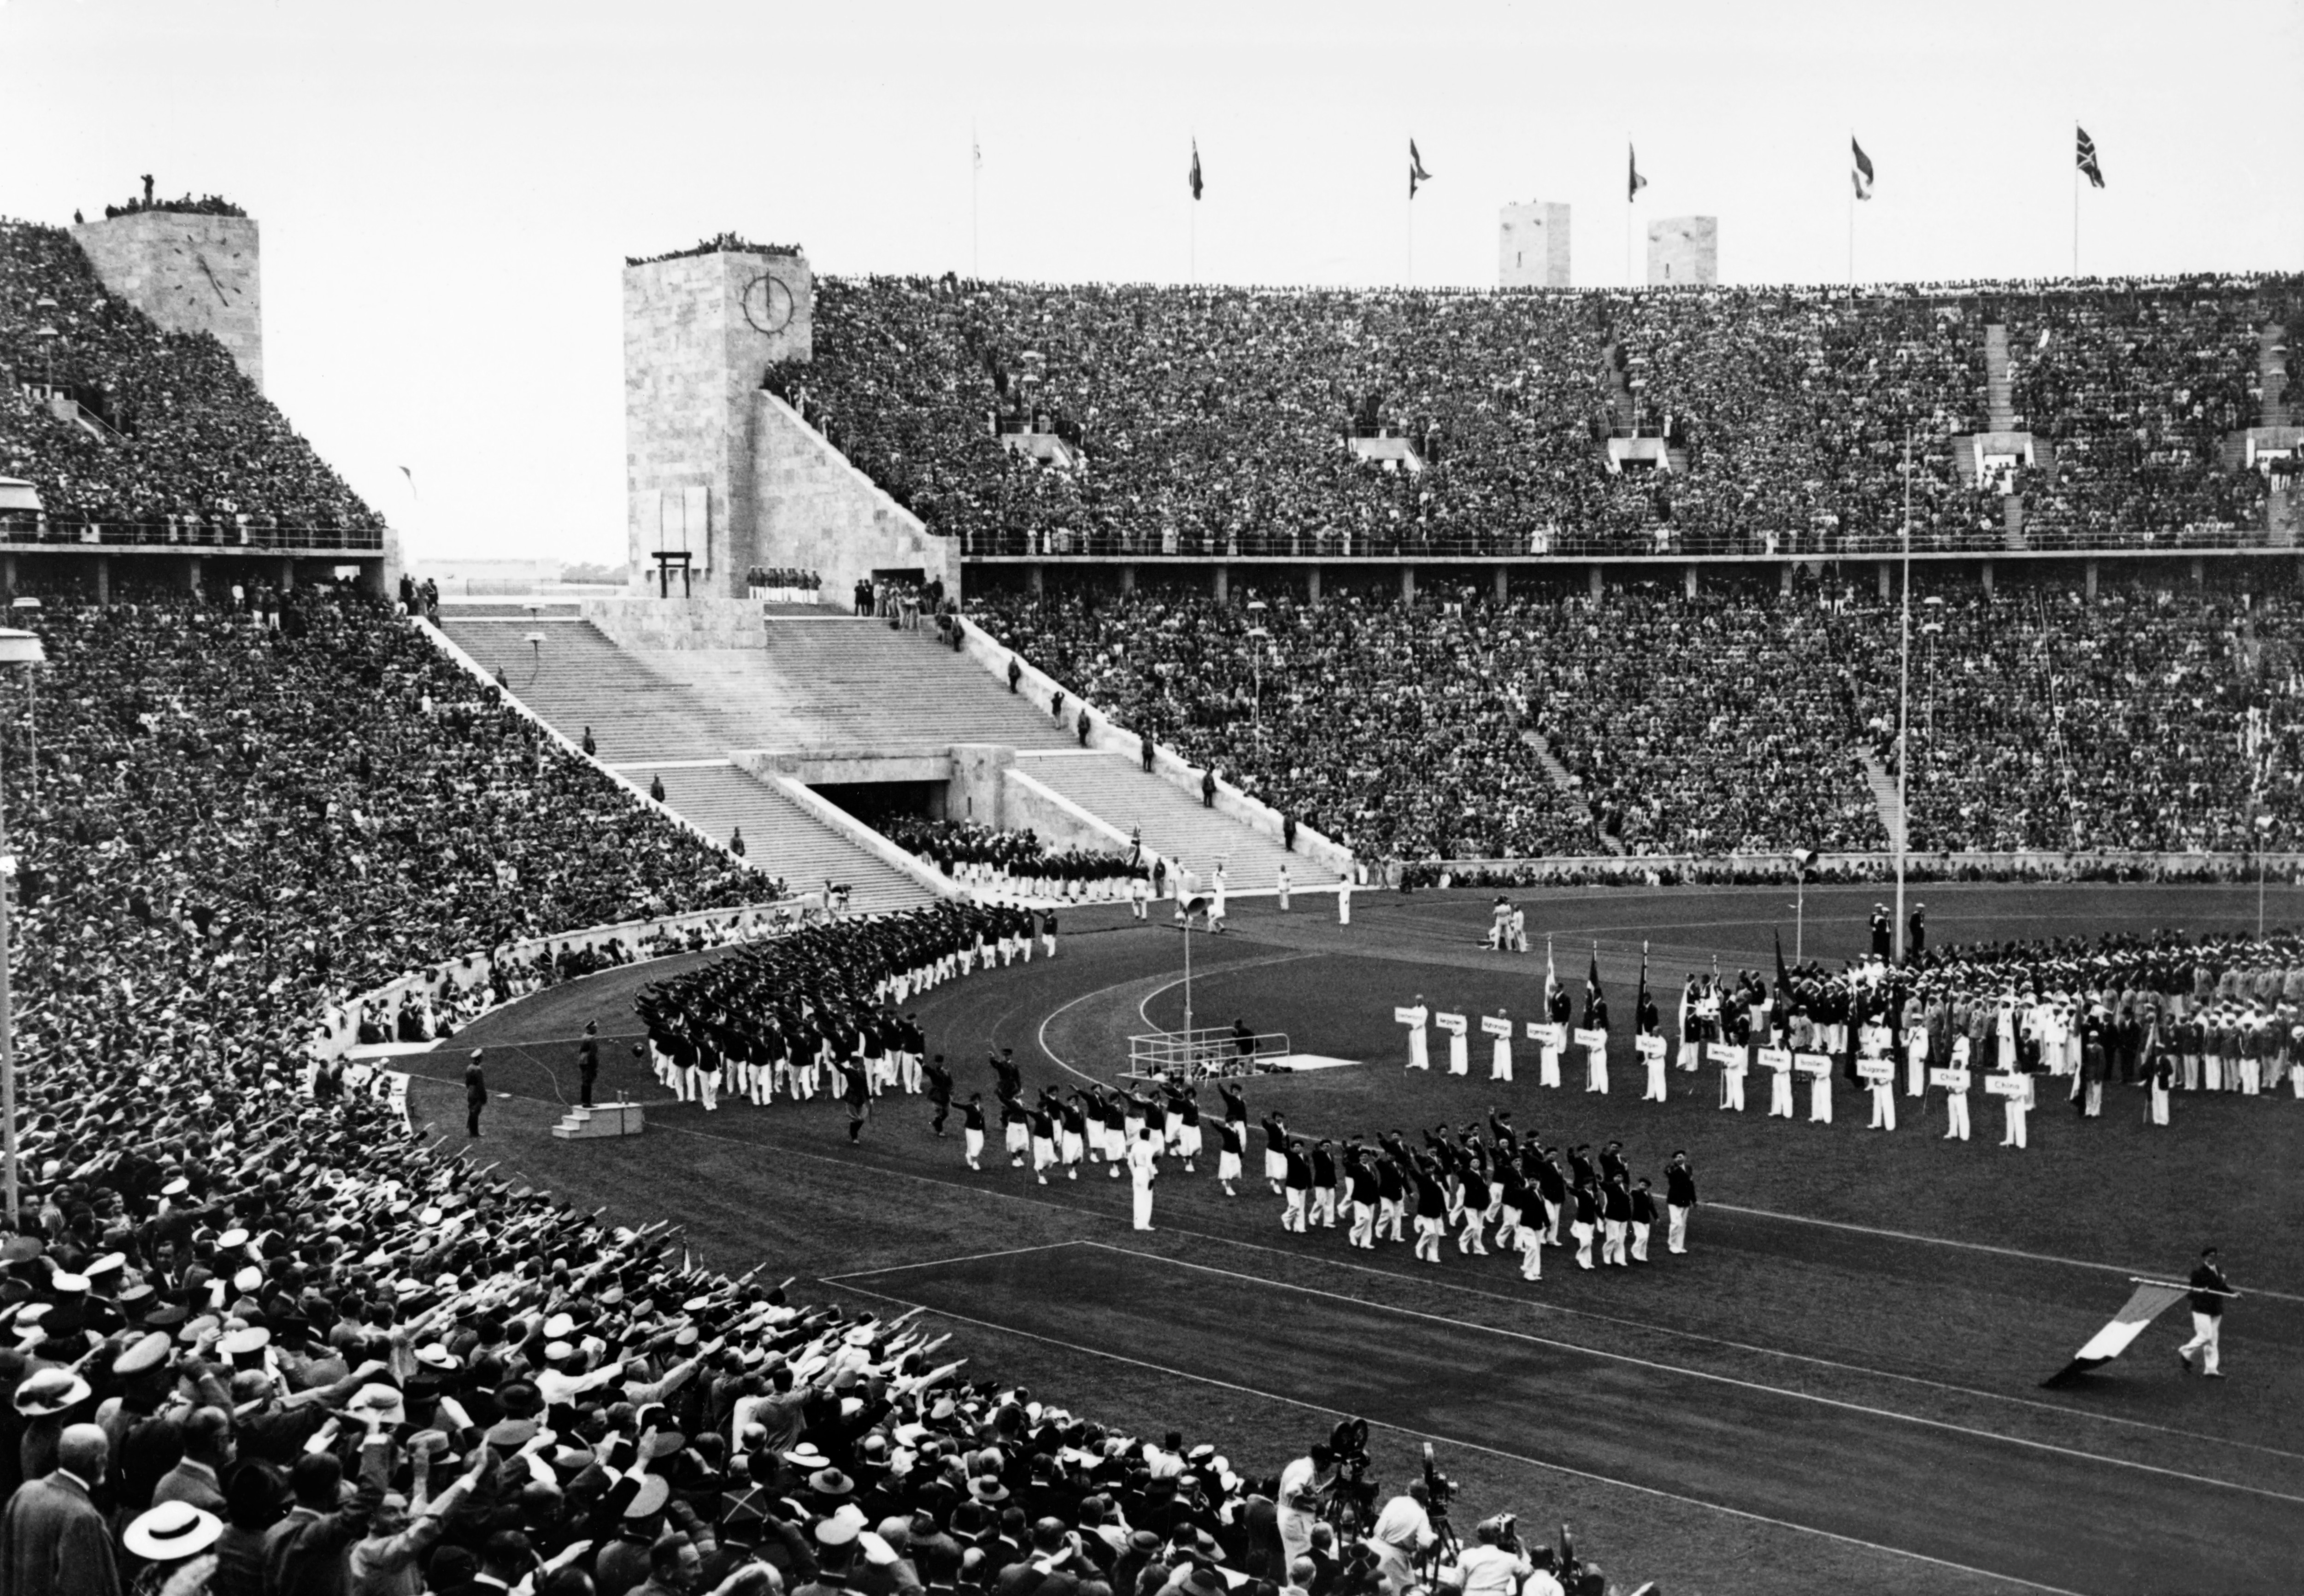 Cerimonia d'apertura tenutasi il 1 agosto 1936 all'Olympiastadion di Berlino, alla presenza del Fuhrer. Ad annunciarne il suo arrivo le fanfare dirette da Richard Strauss